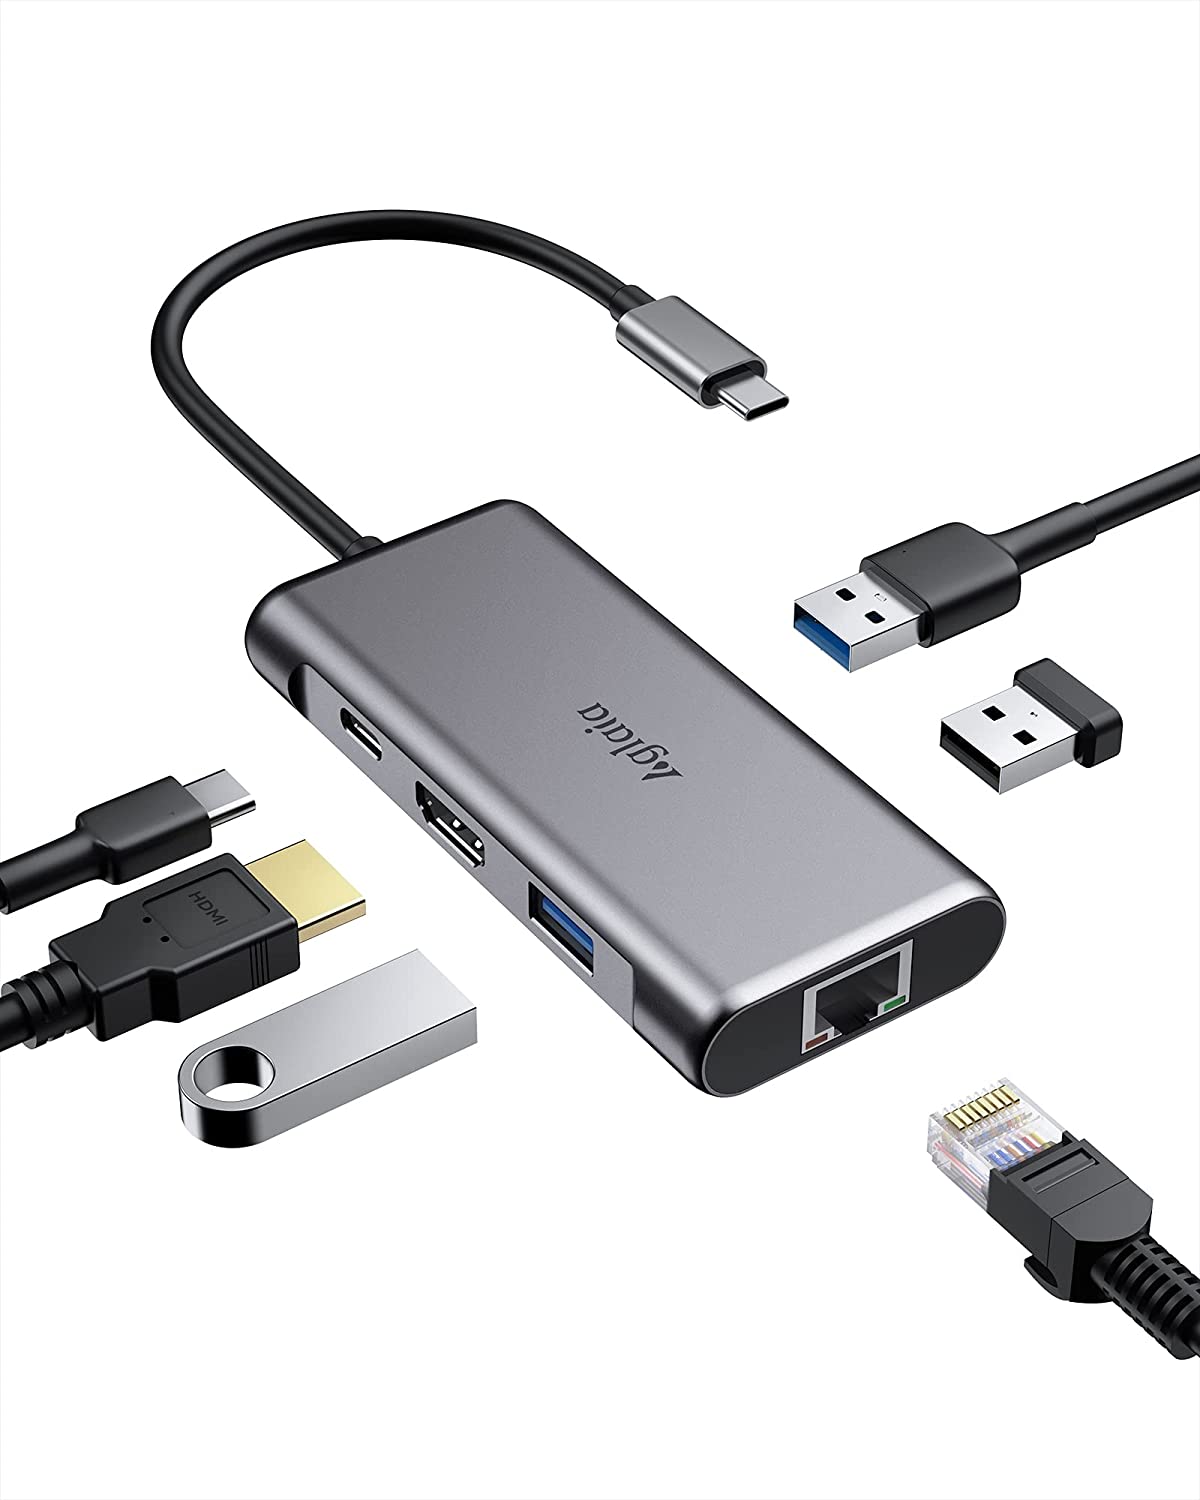 Bild zu Aglaia 6-in-1 USB-C Hub mit Gigabit Ethernet für 20,62€